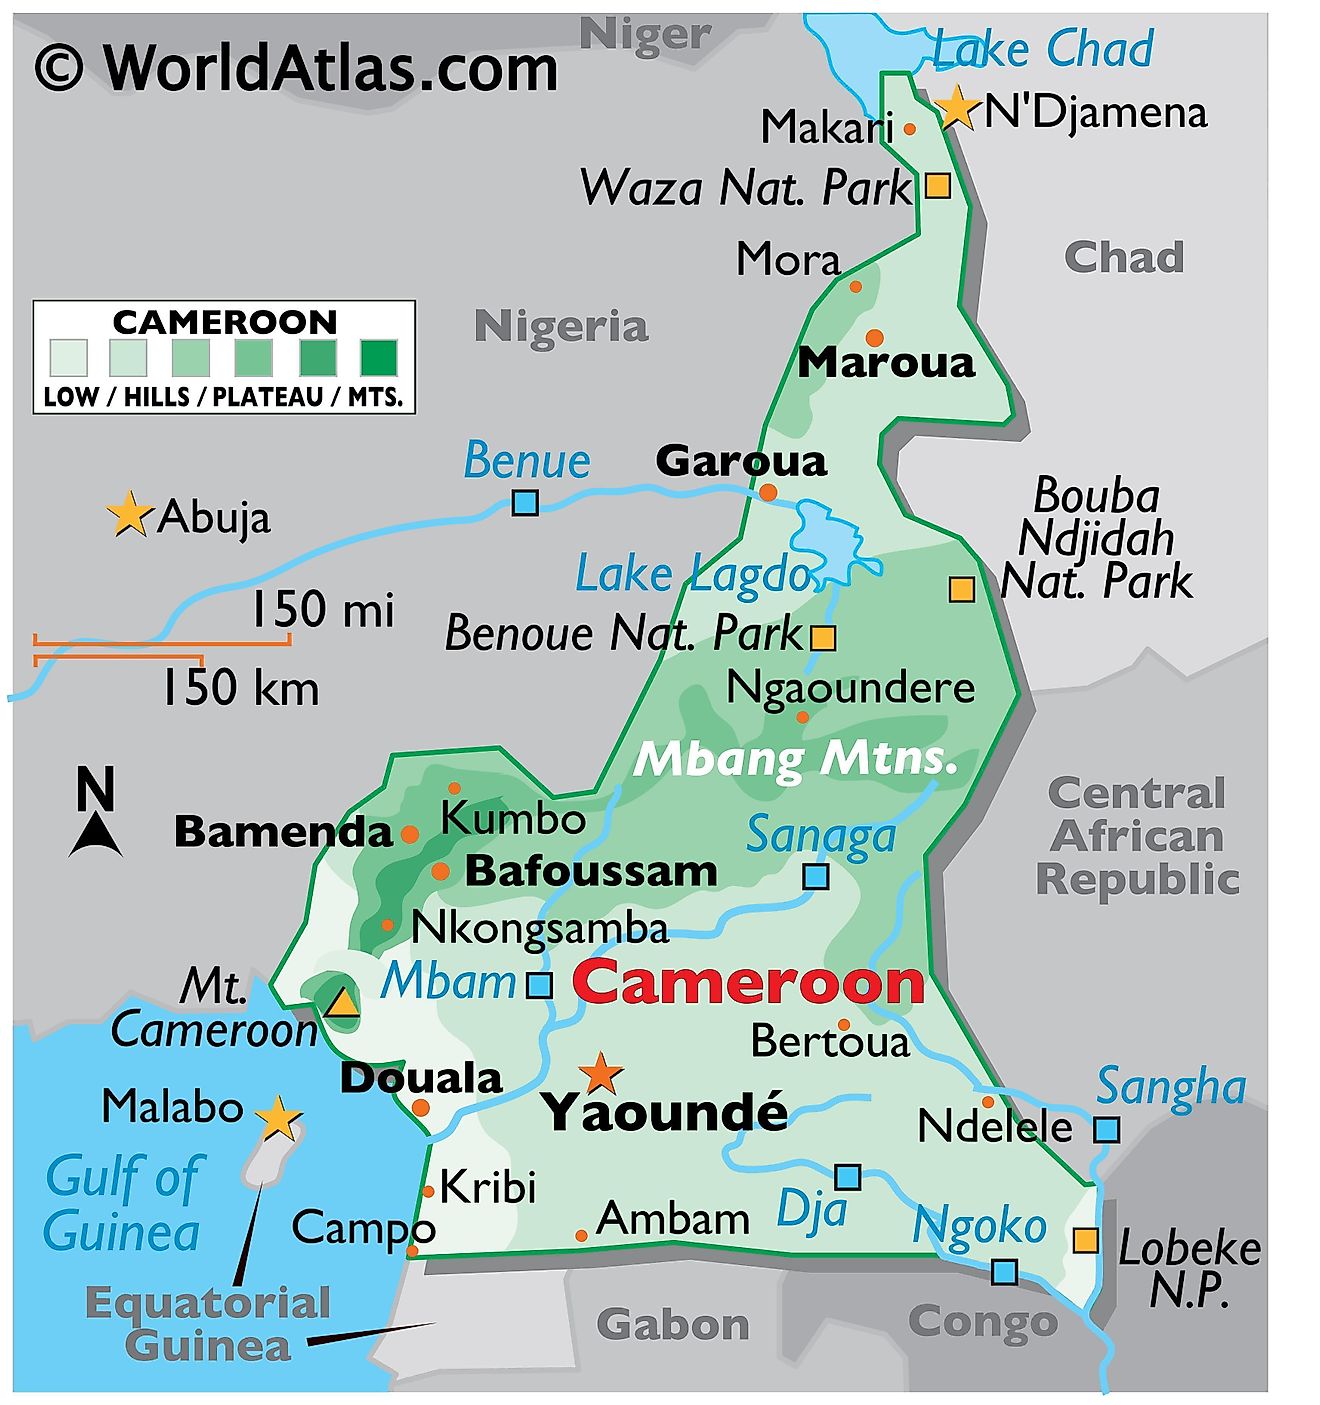 Mapa físico de Camerún con límites estatales. El mapa muestra las características físicas importantes como el relieve, los puntos extremos, los principales ríos, lagos, parques nacionales y ciudades.